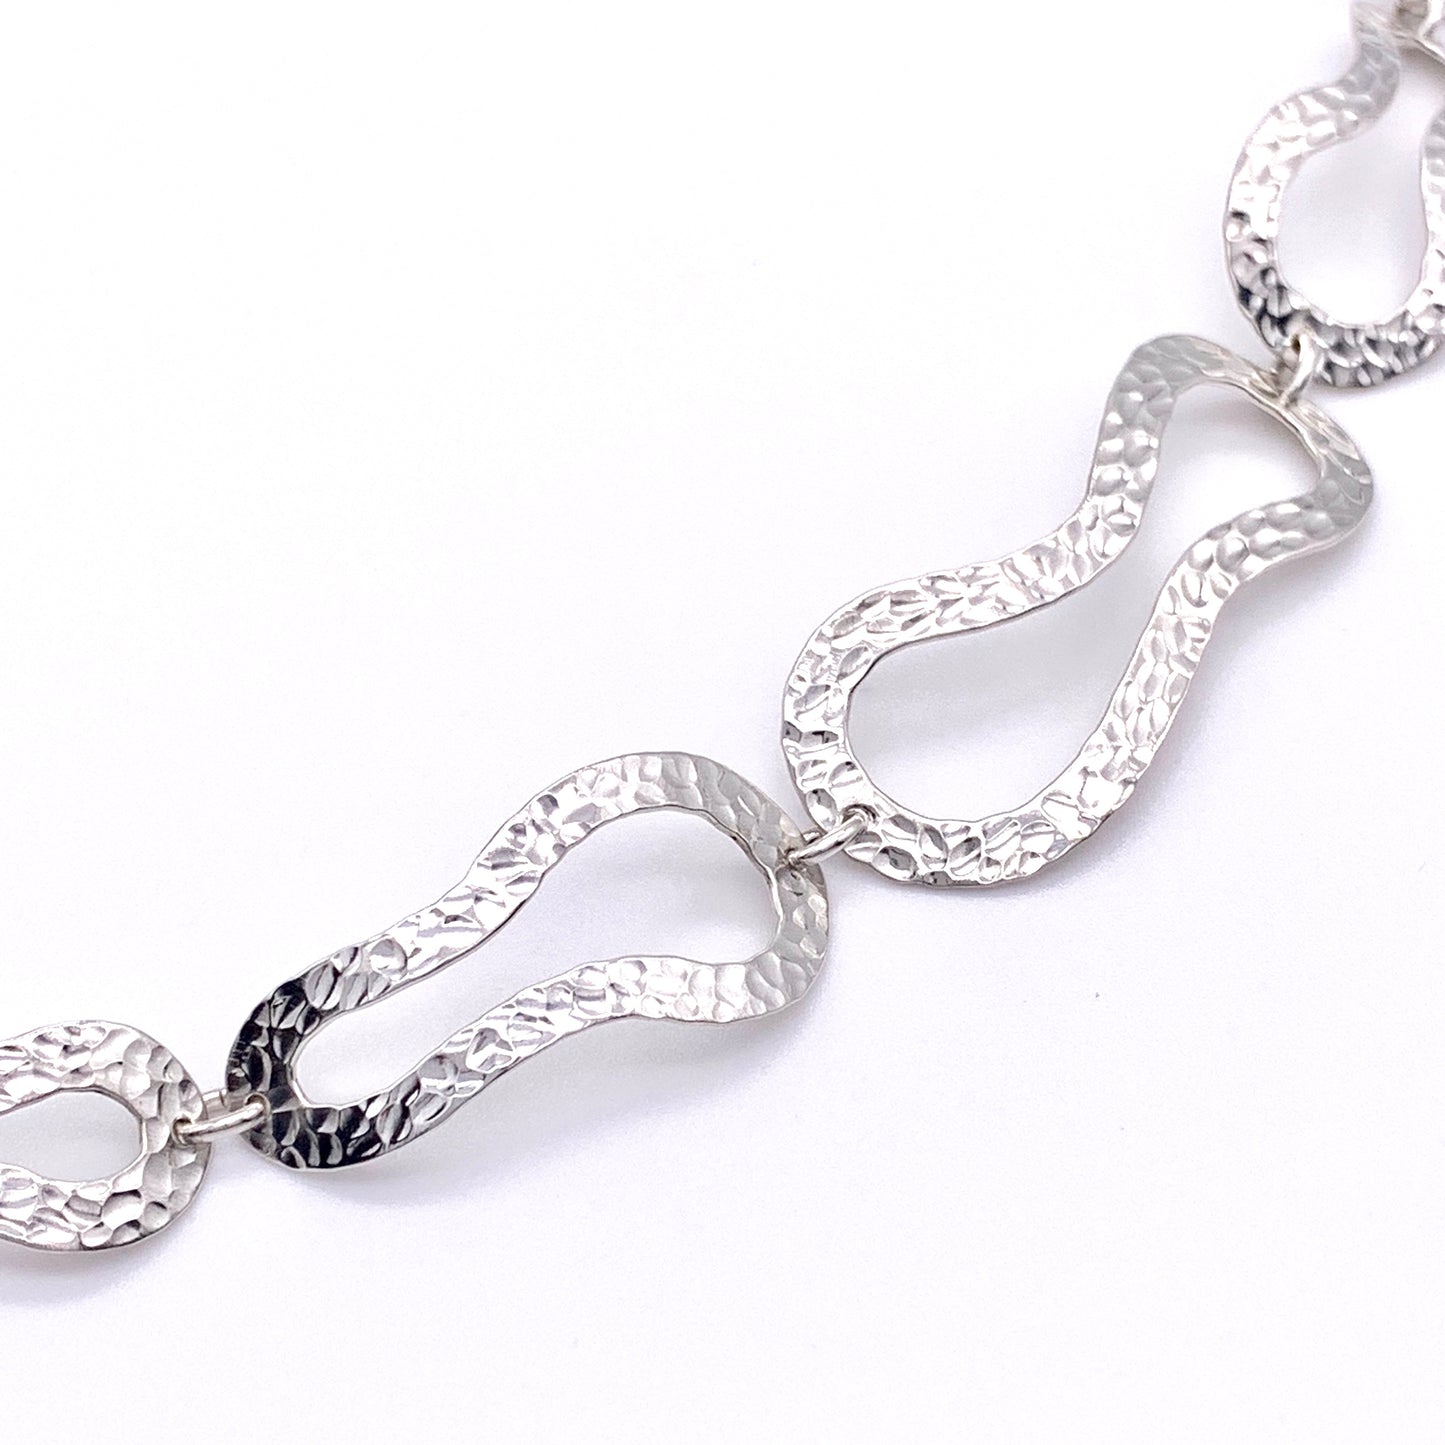 Sterling Silver Free Form Textured Link Bracelet